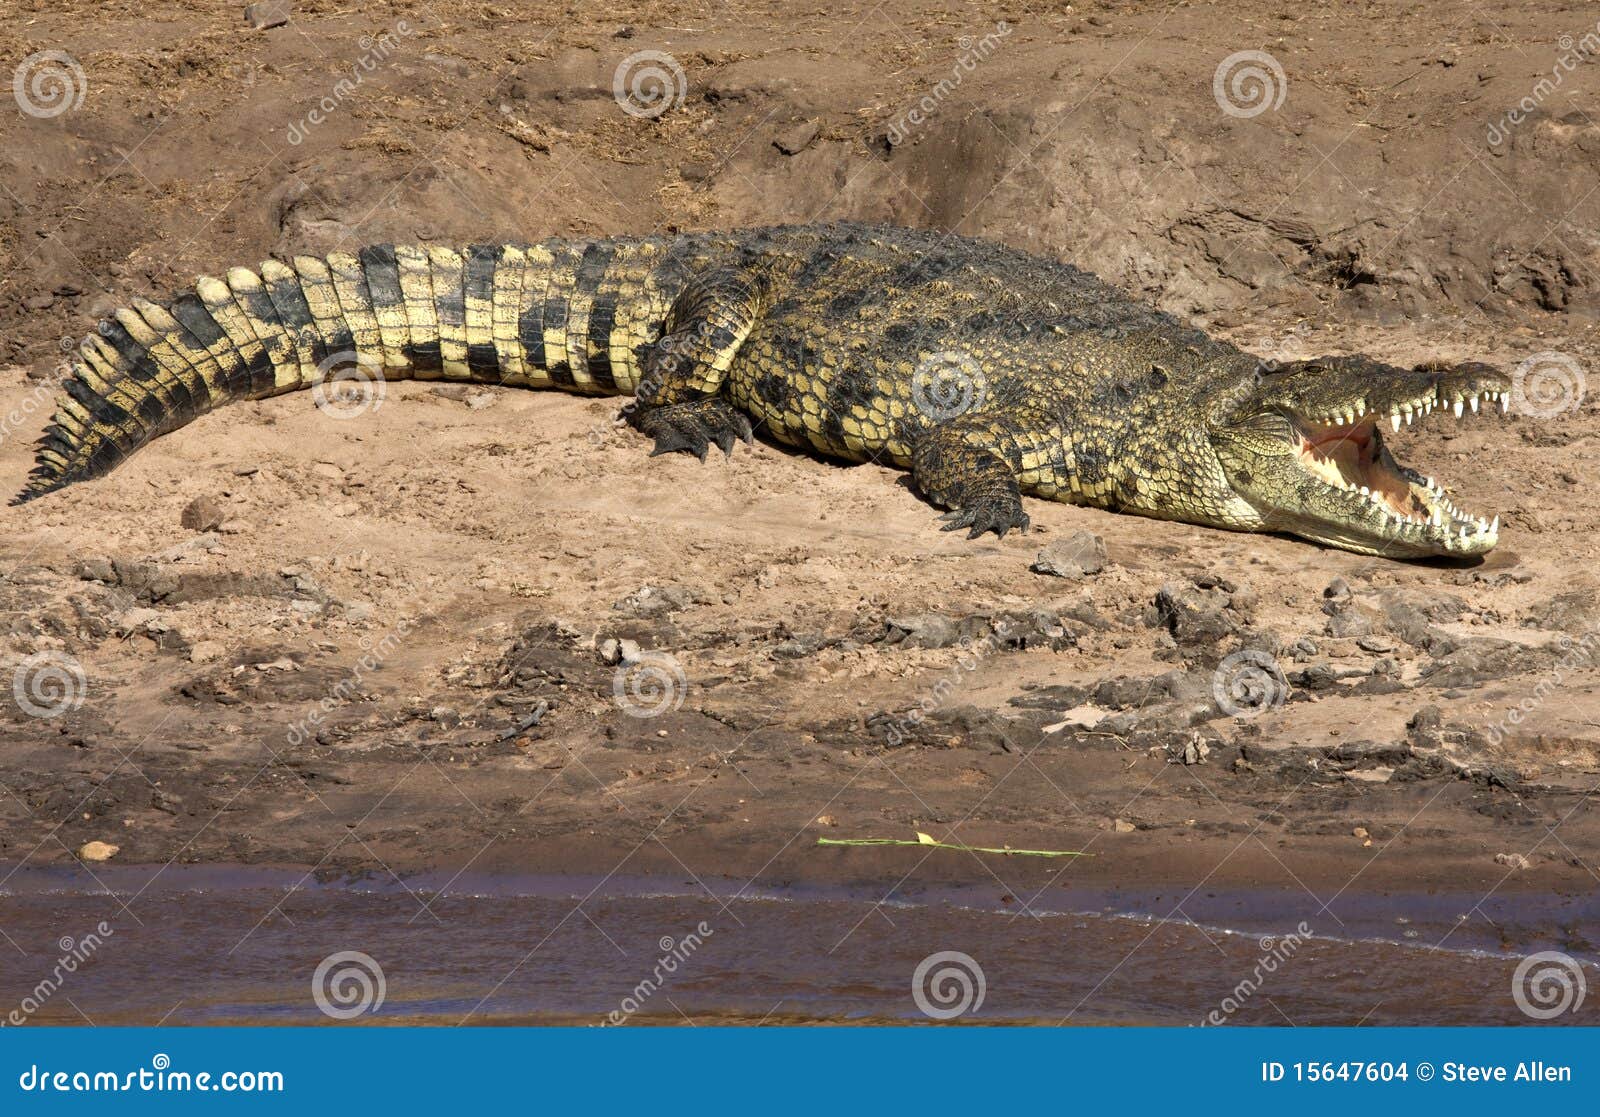 nile crocodile - botswana